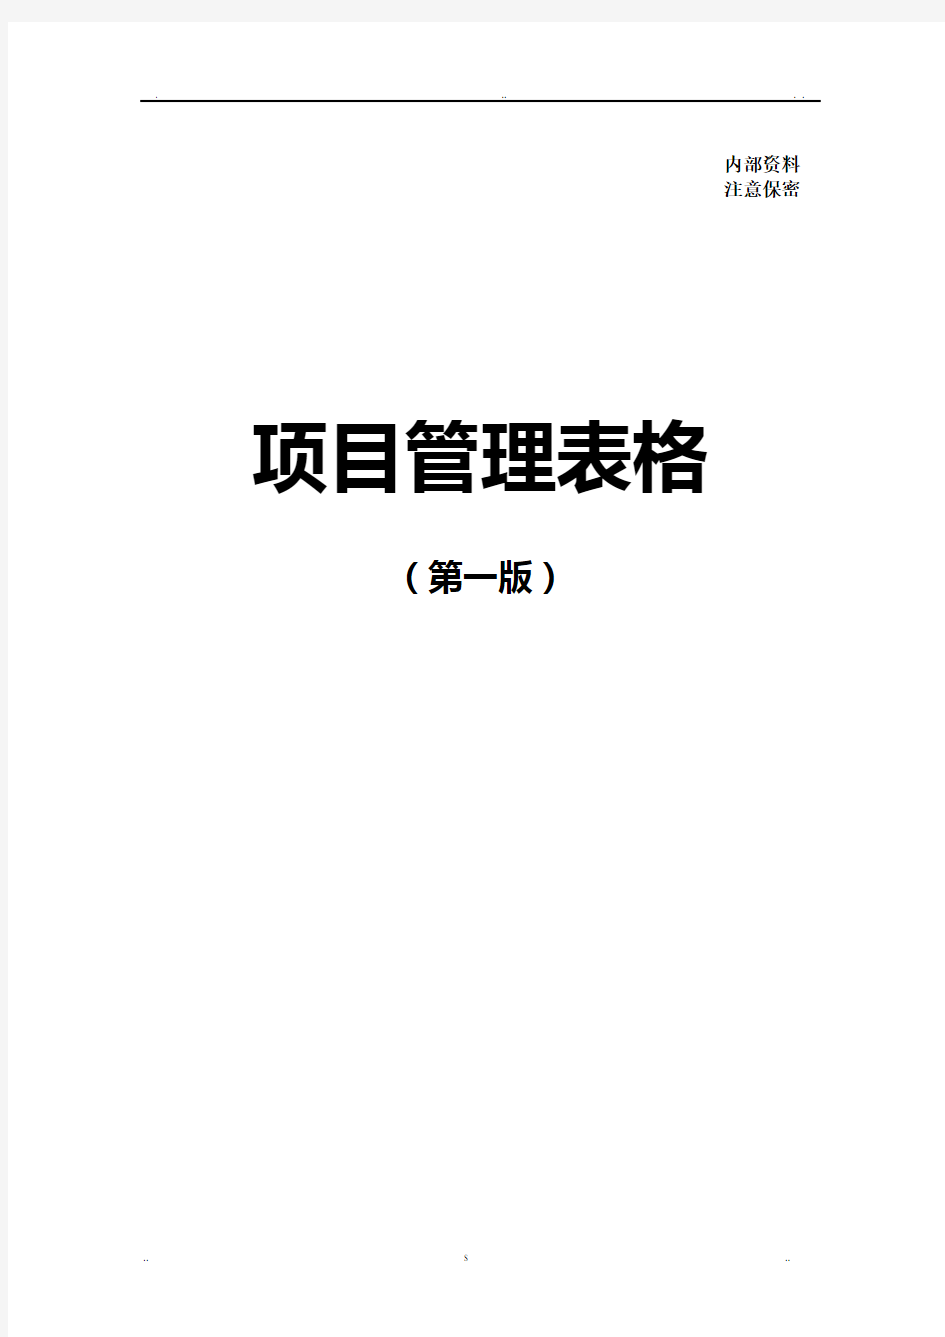 中国建筑项目管理手册表格